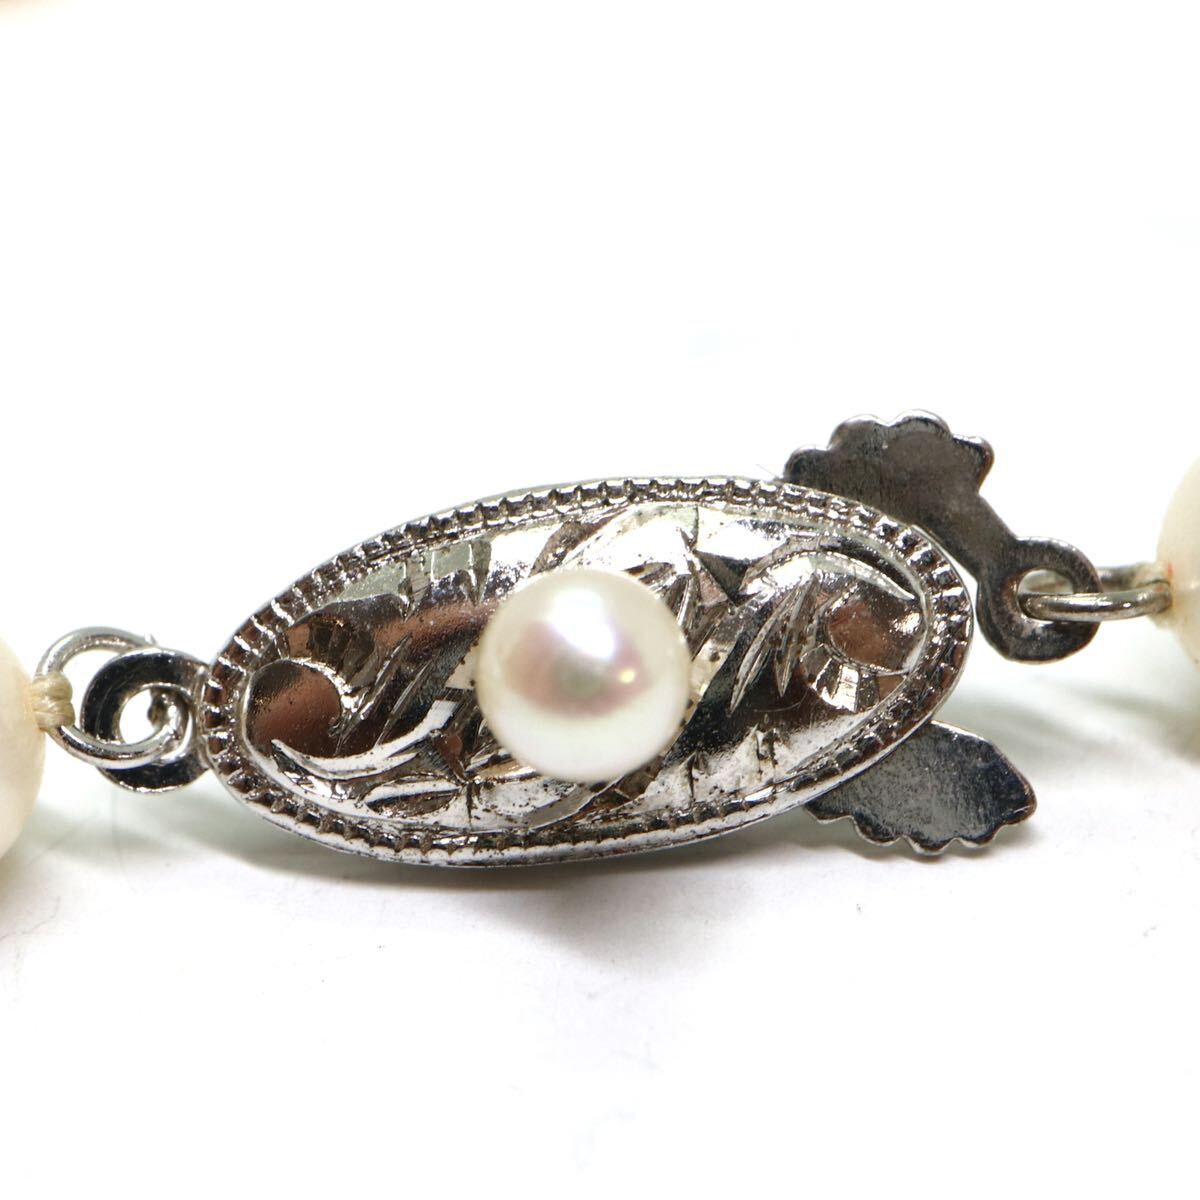 《アコヤ本真珠ネックレス》M 約6.0-6.5mm珠 20.8g 約38cm pearl necklace ジュエリー jewelry DC0/DC0